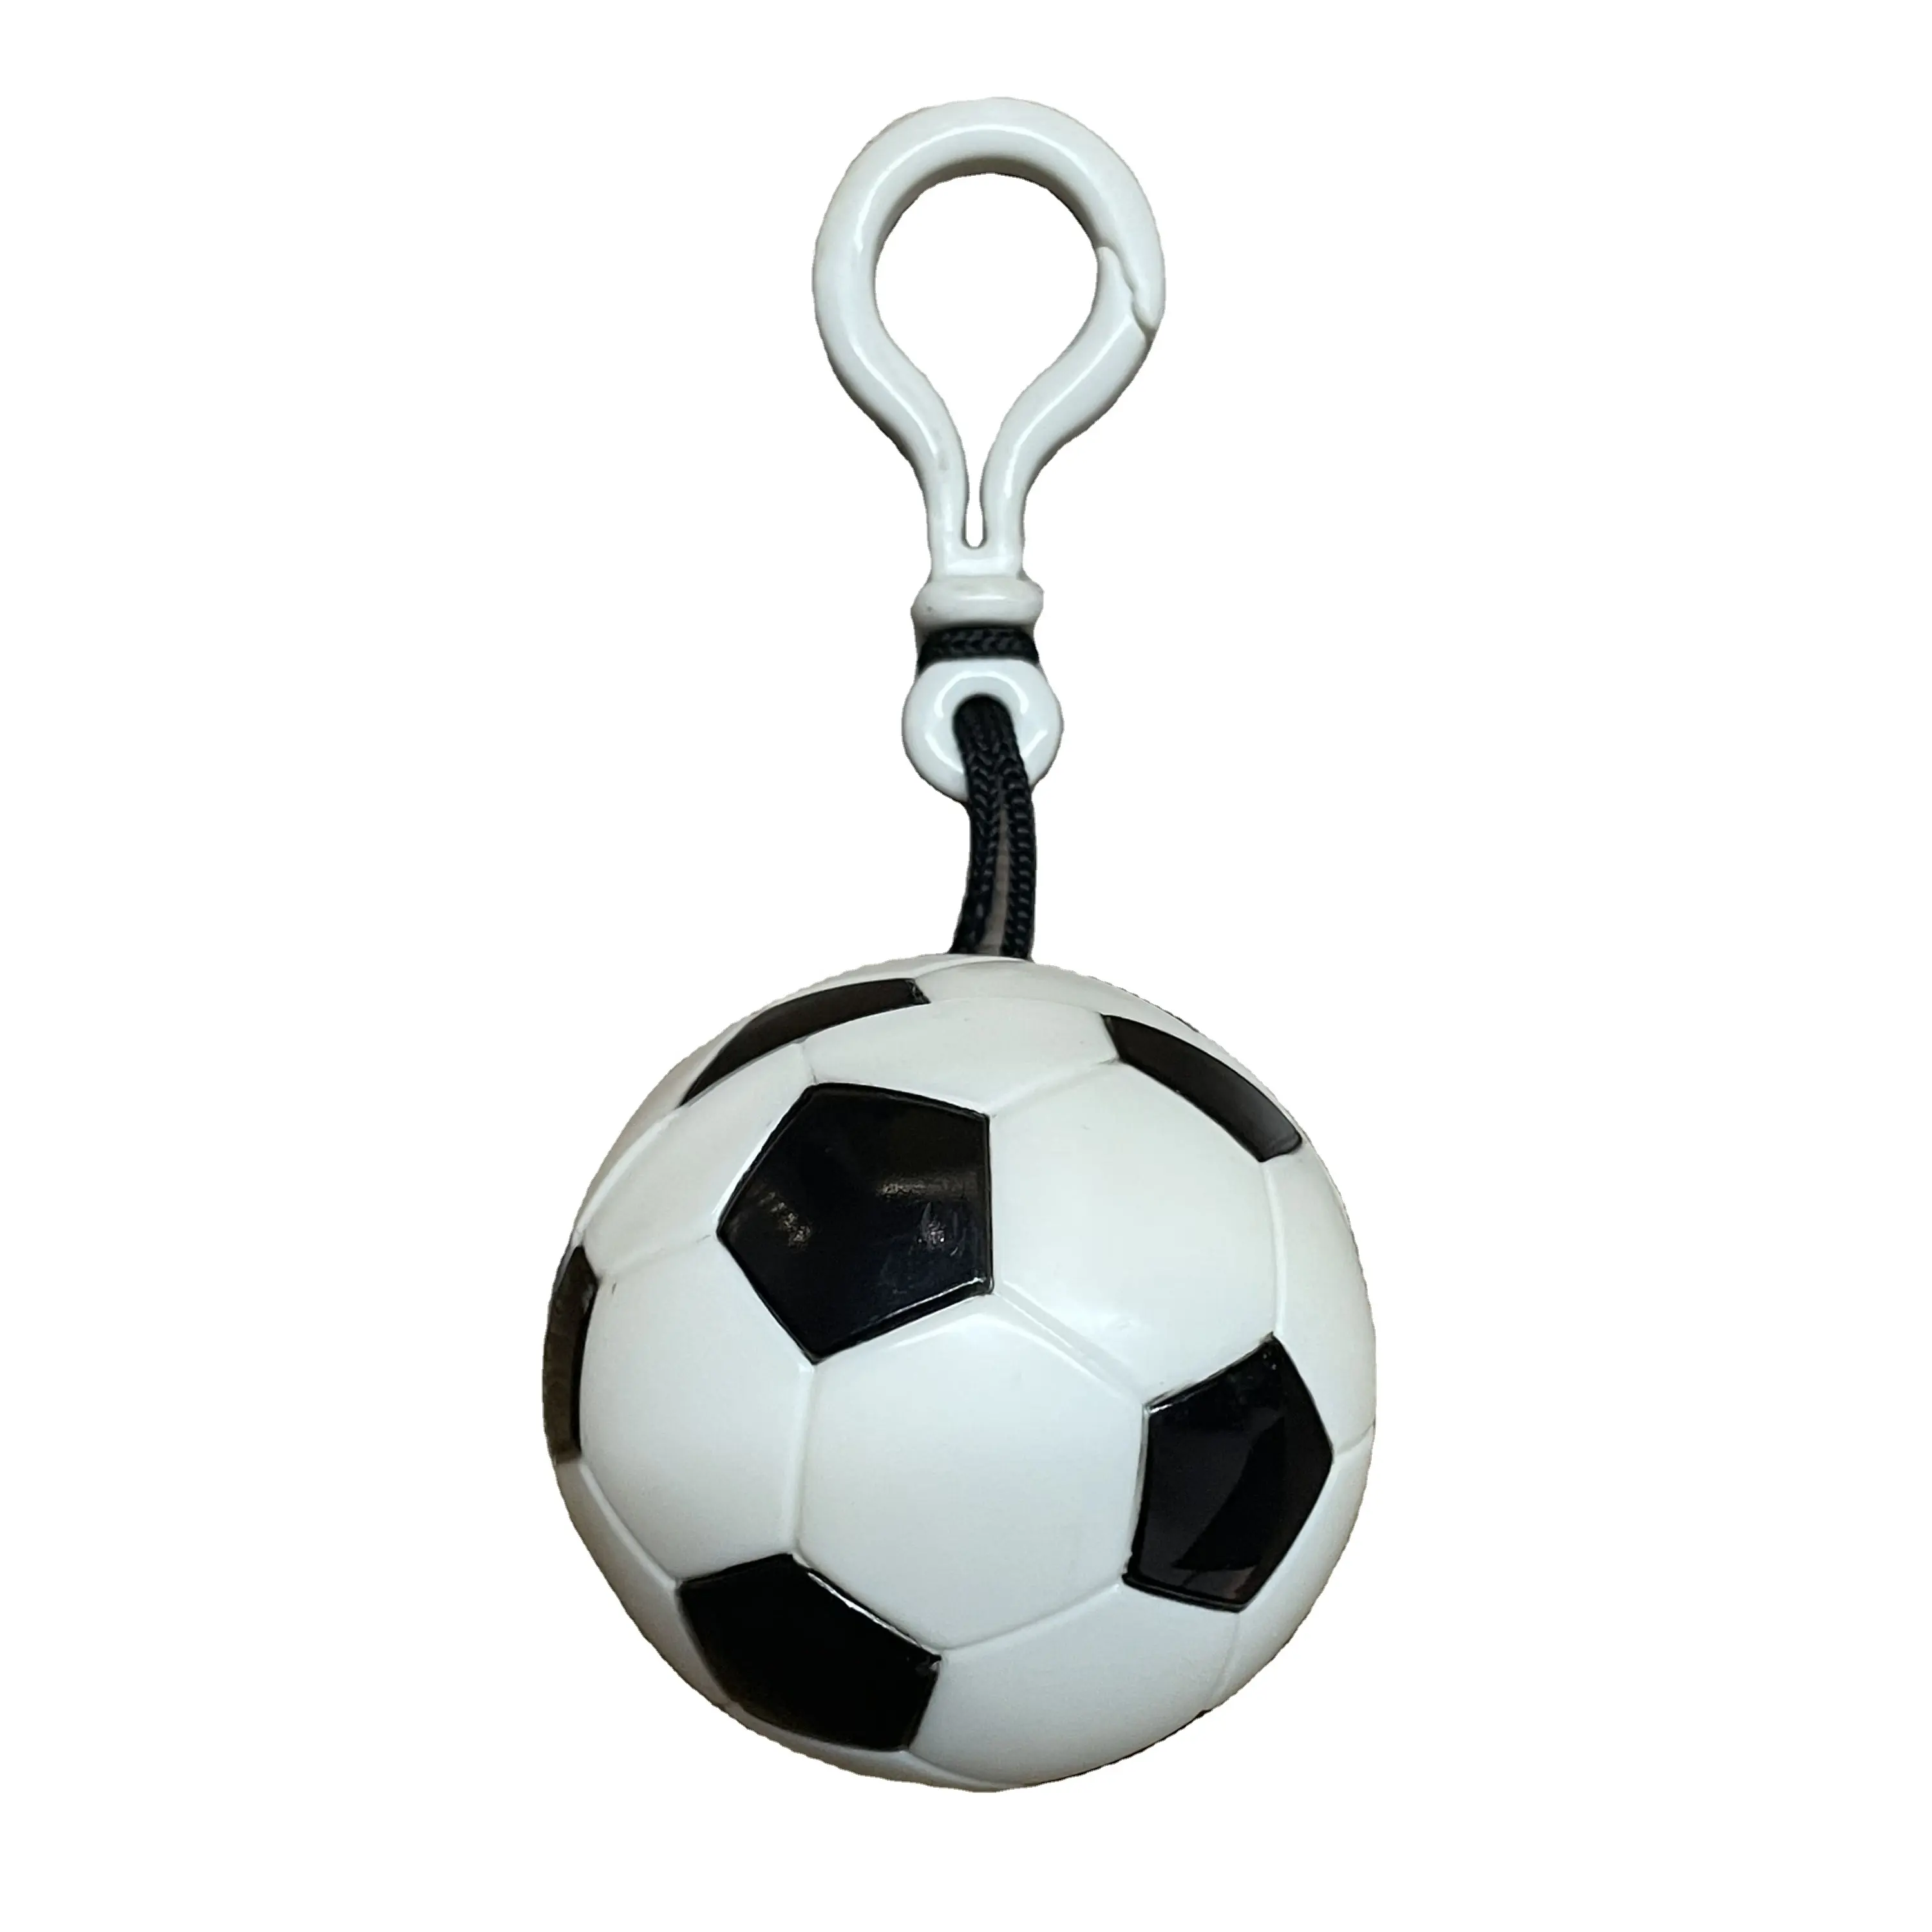 plastic ball key chain disposable rain poncho disposable raincoat poncho ball with keychain logo plastic rain poncho soccer ball